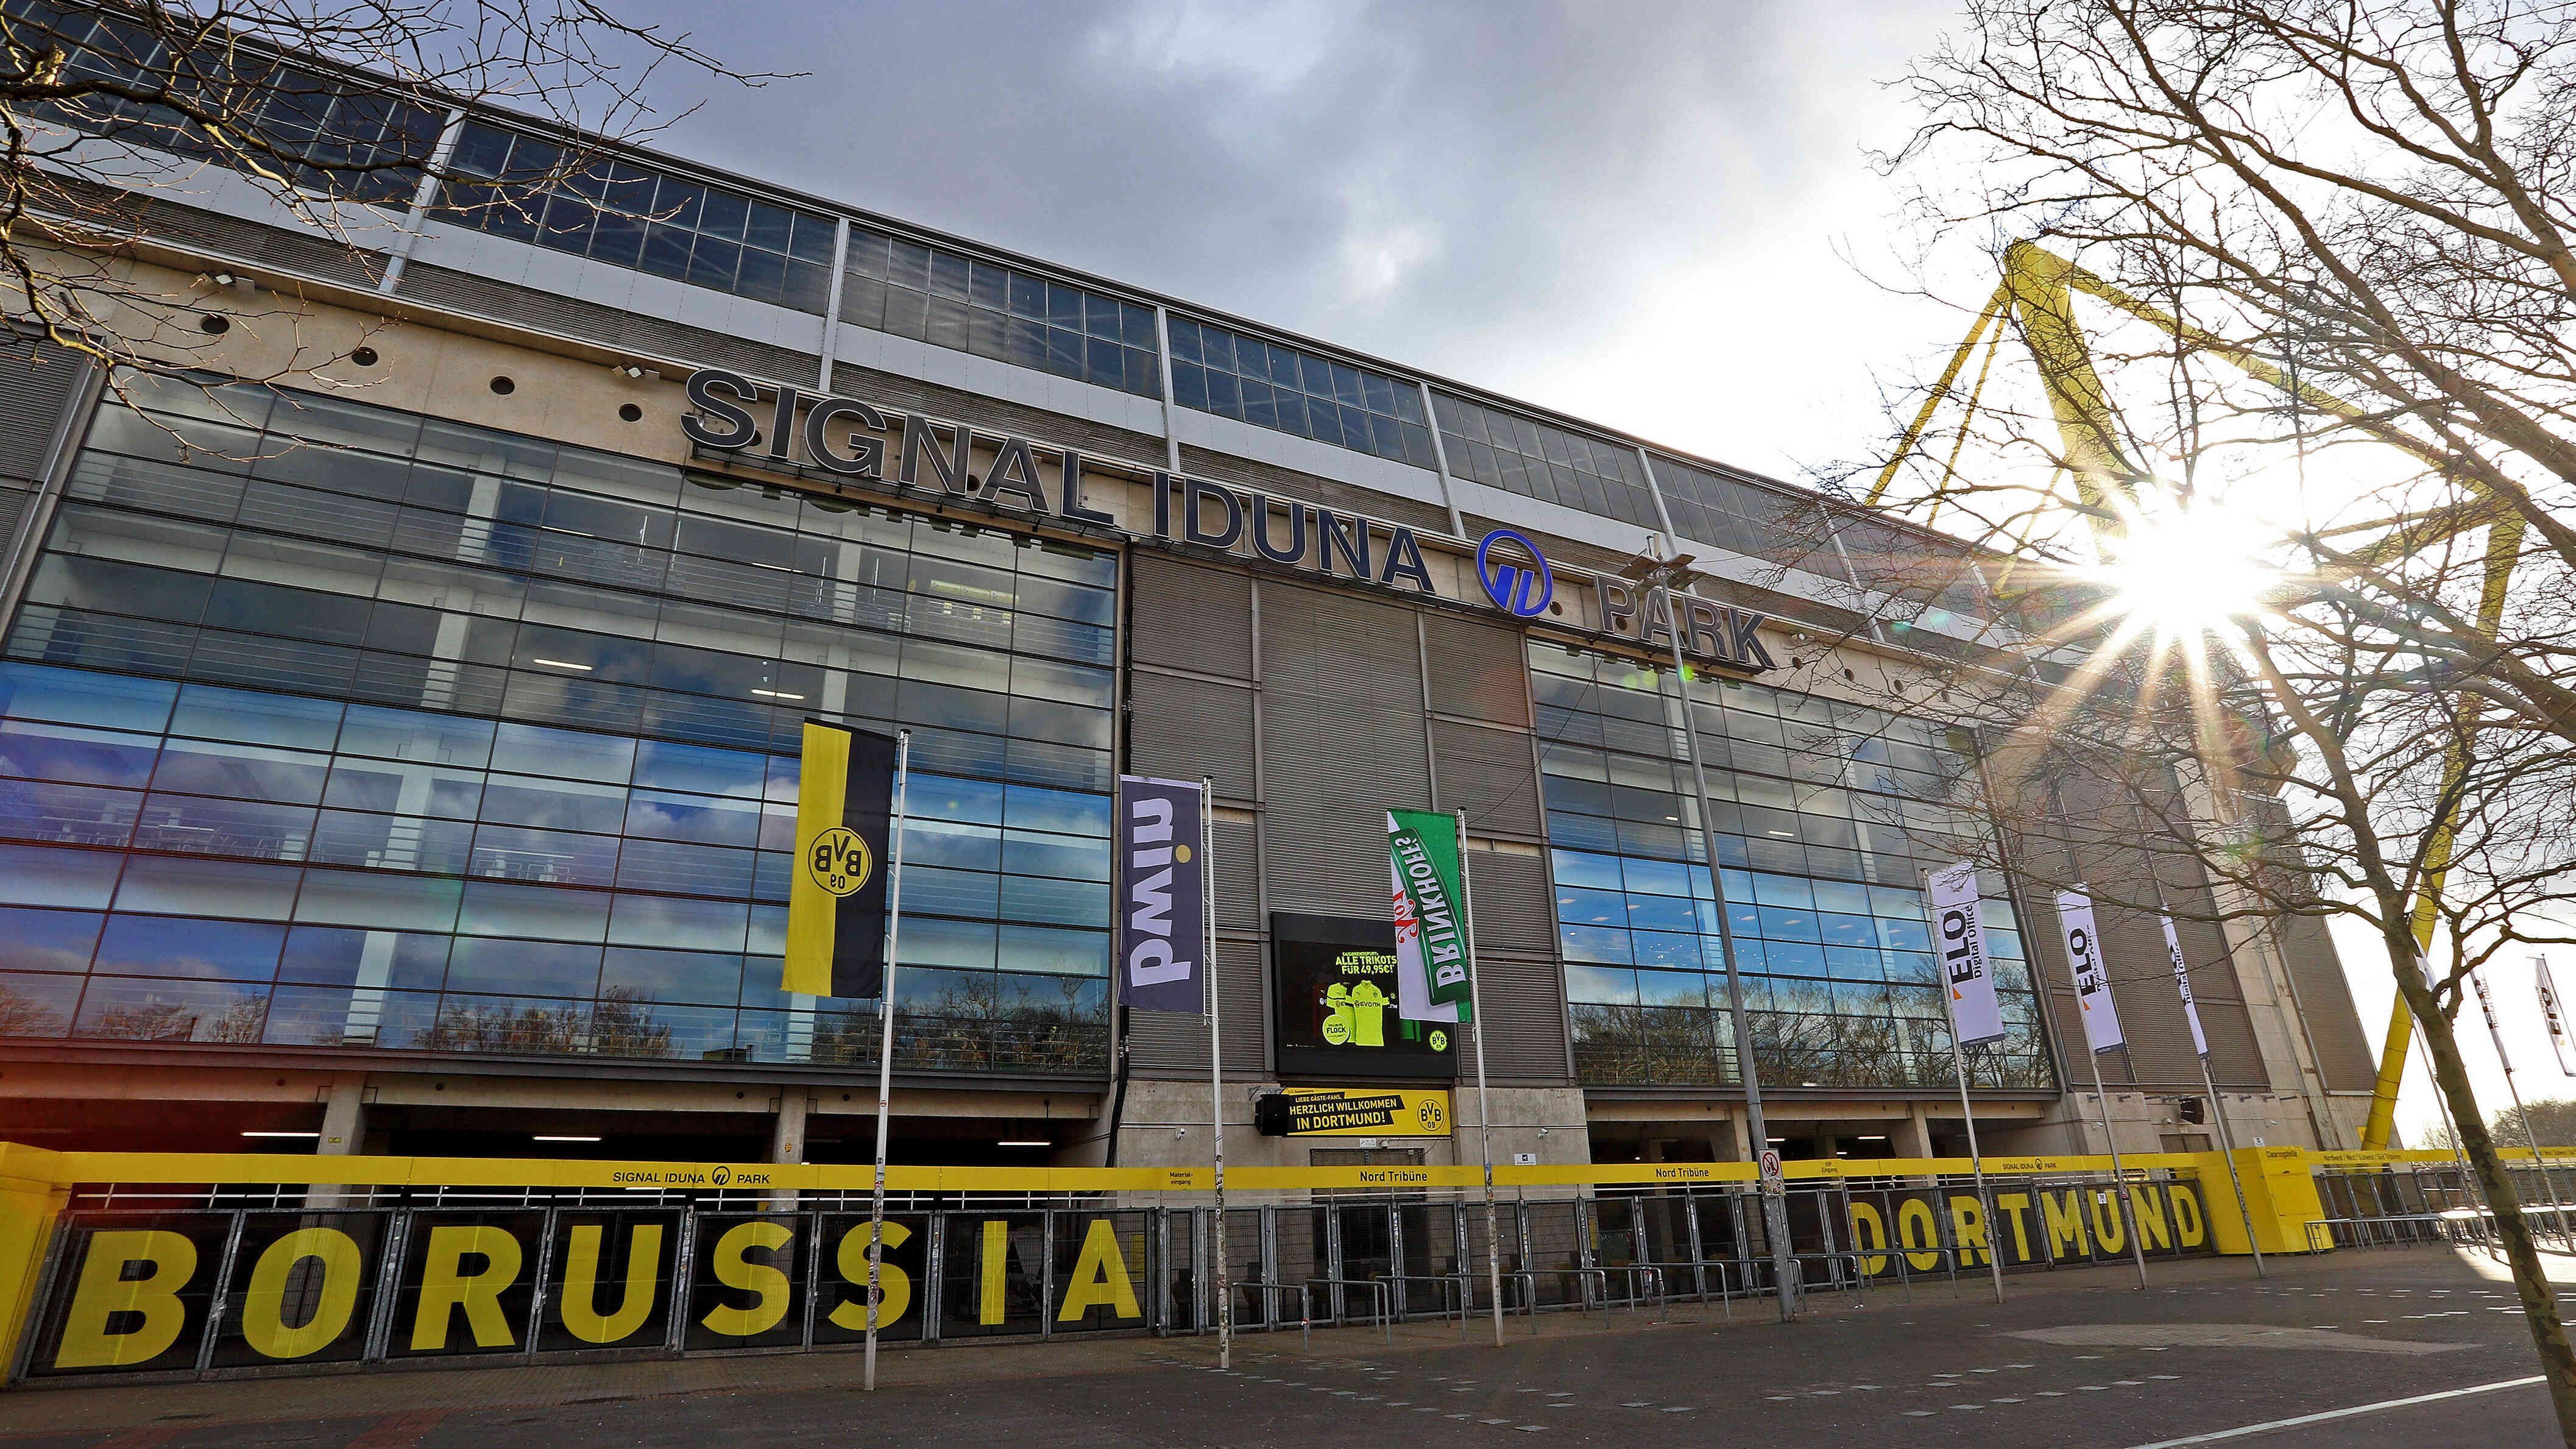 
                <strong>Borussia Dortmund</strong><br>
                Borussia Dortmund spielt noch immer im Westfalenstadion, das inzwischen "Signal Iduna Park" heißt.
              